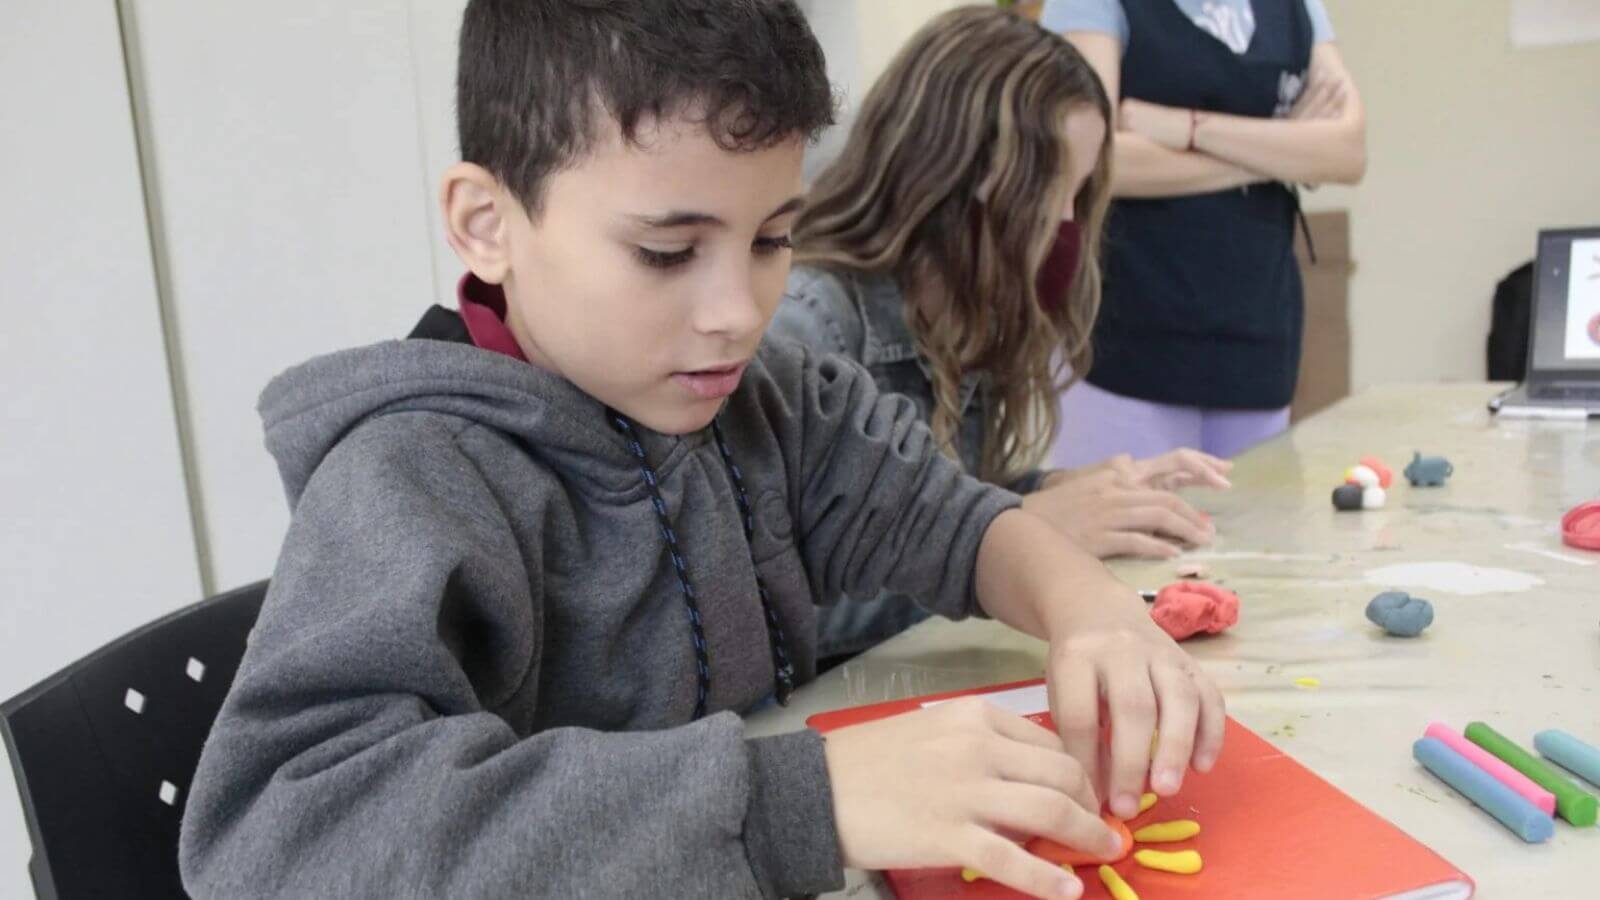 Criança em atividade de modelagem com massinha na APAE Jundiaí, desenvolvendo habilidades motoras e criatividade em ambiente educativo